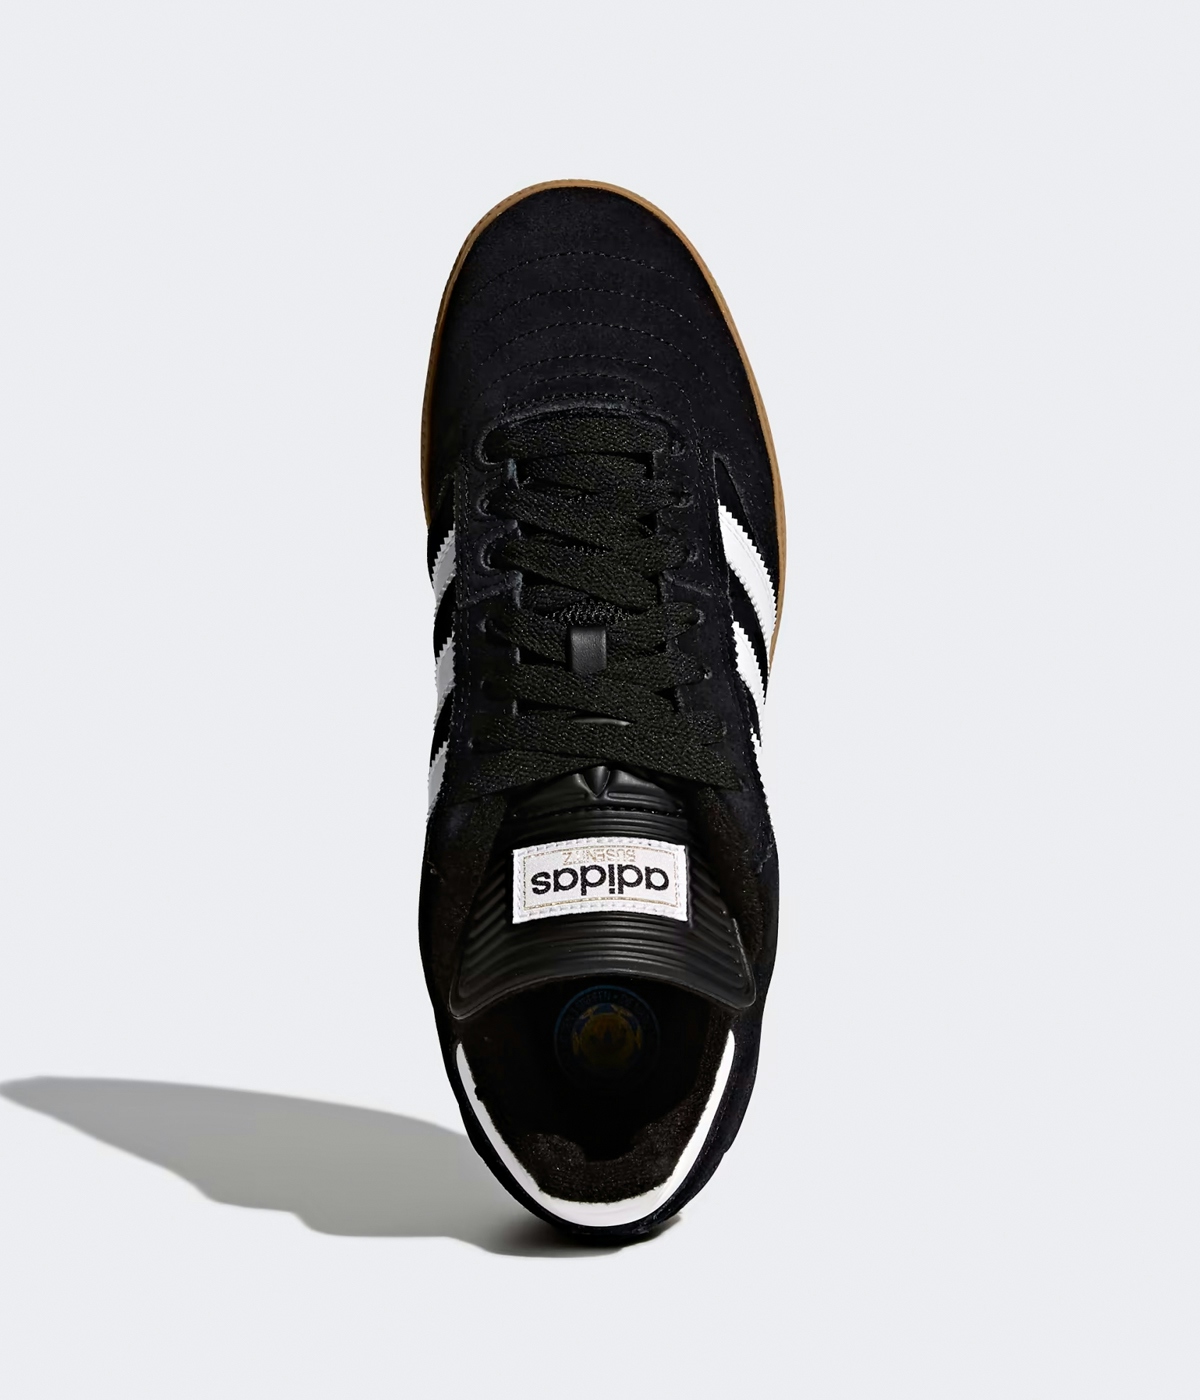 adidas Skateboarding Busenitz Pro Shoes Core Black / Footwear White / Gold Metallic 2